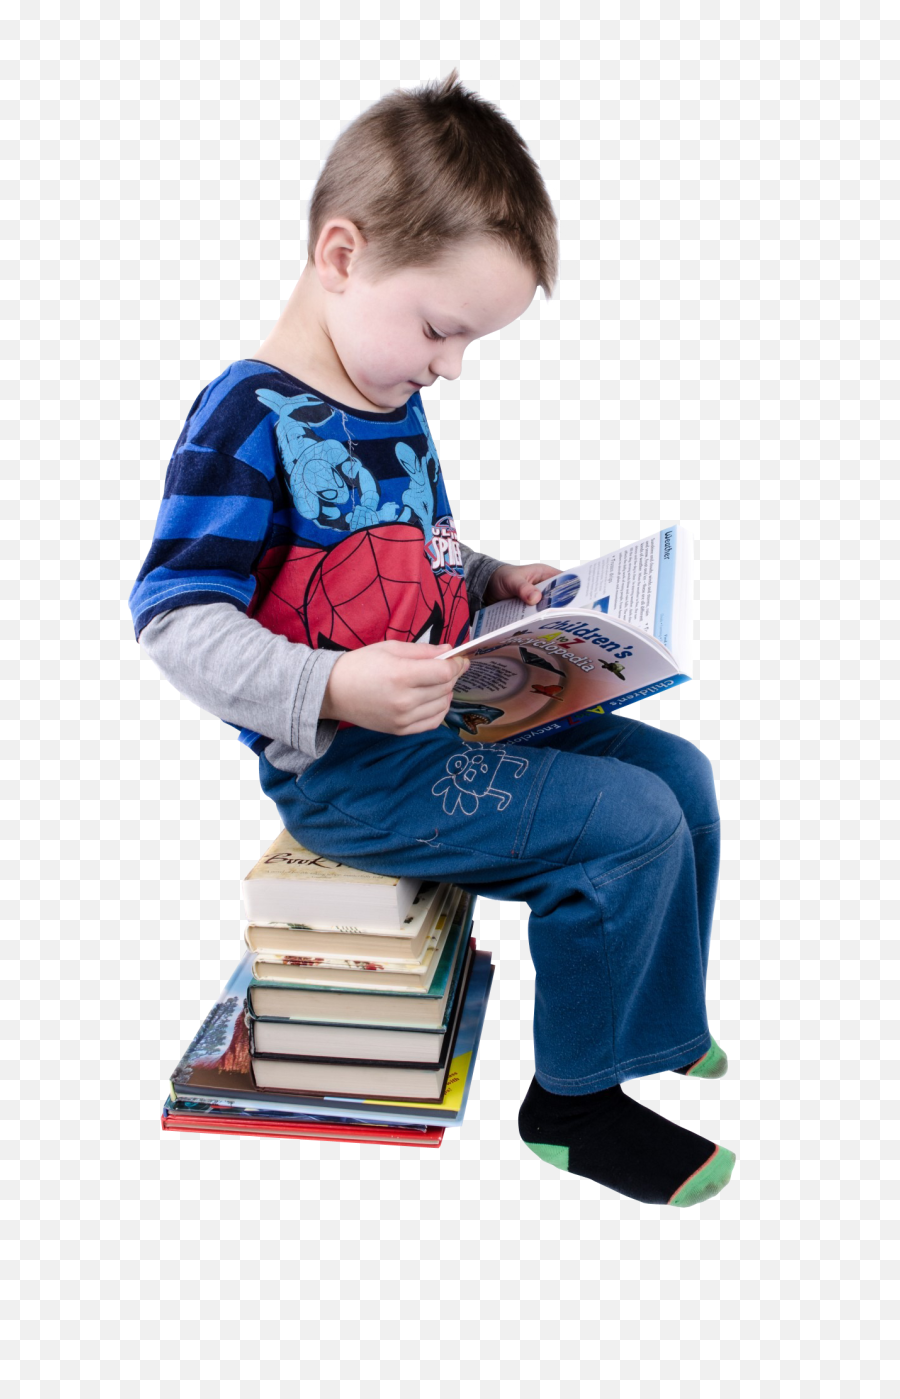 Boy Reading Books Png Image - Pngpix L Importance De La Lecture,Books Png